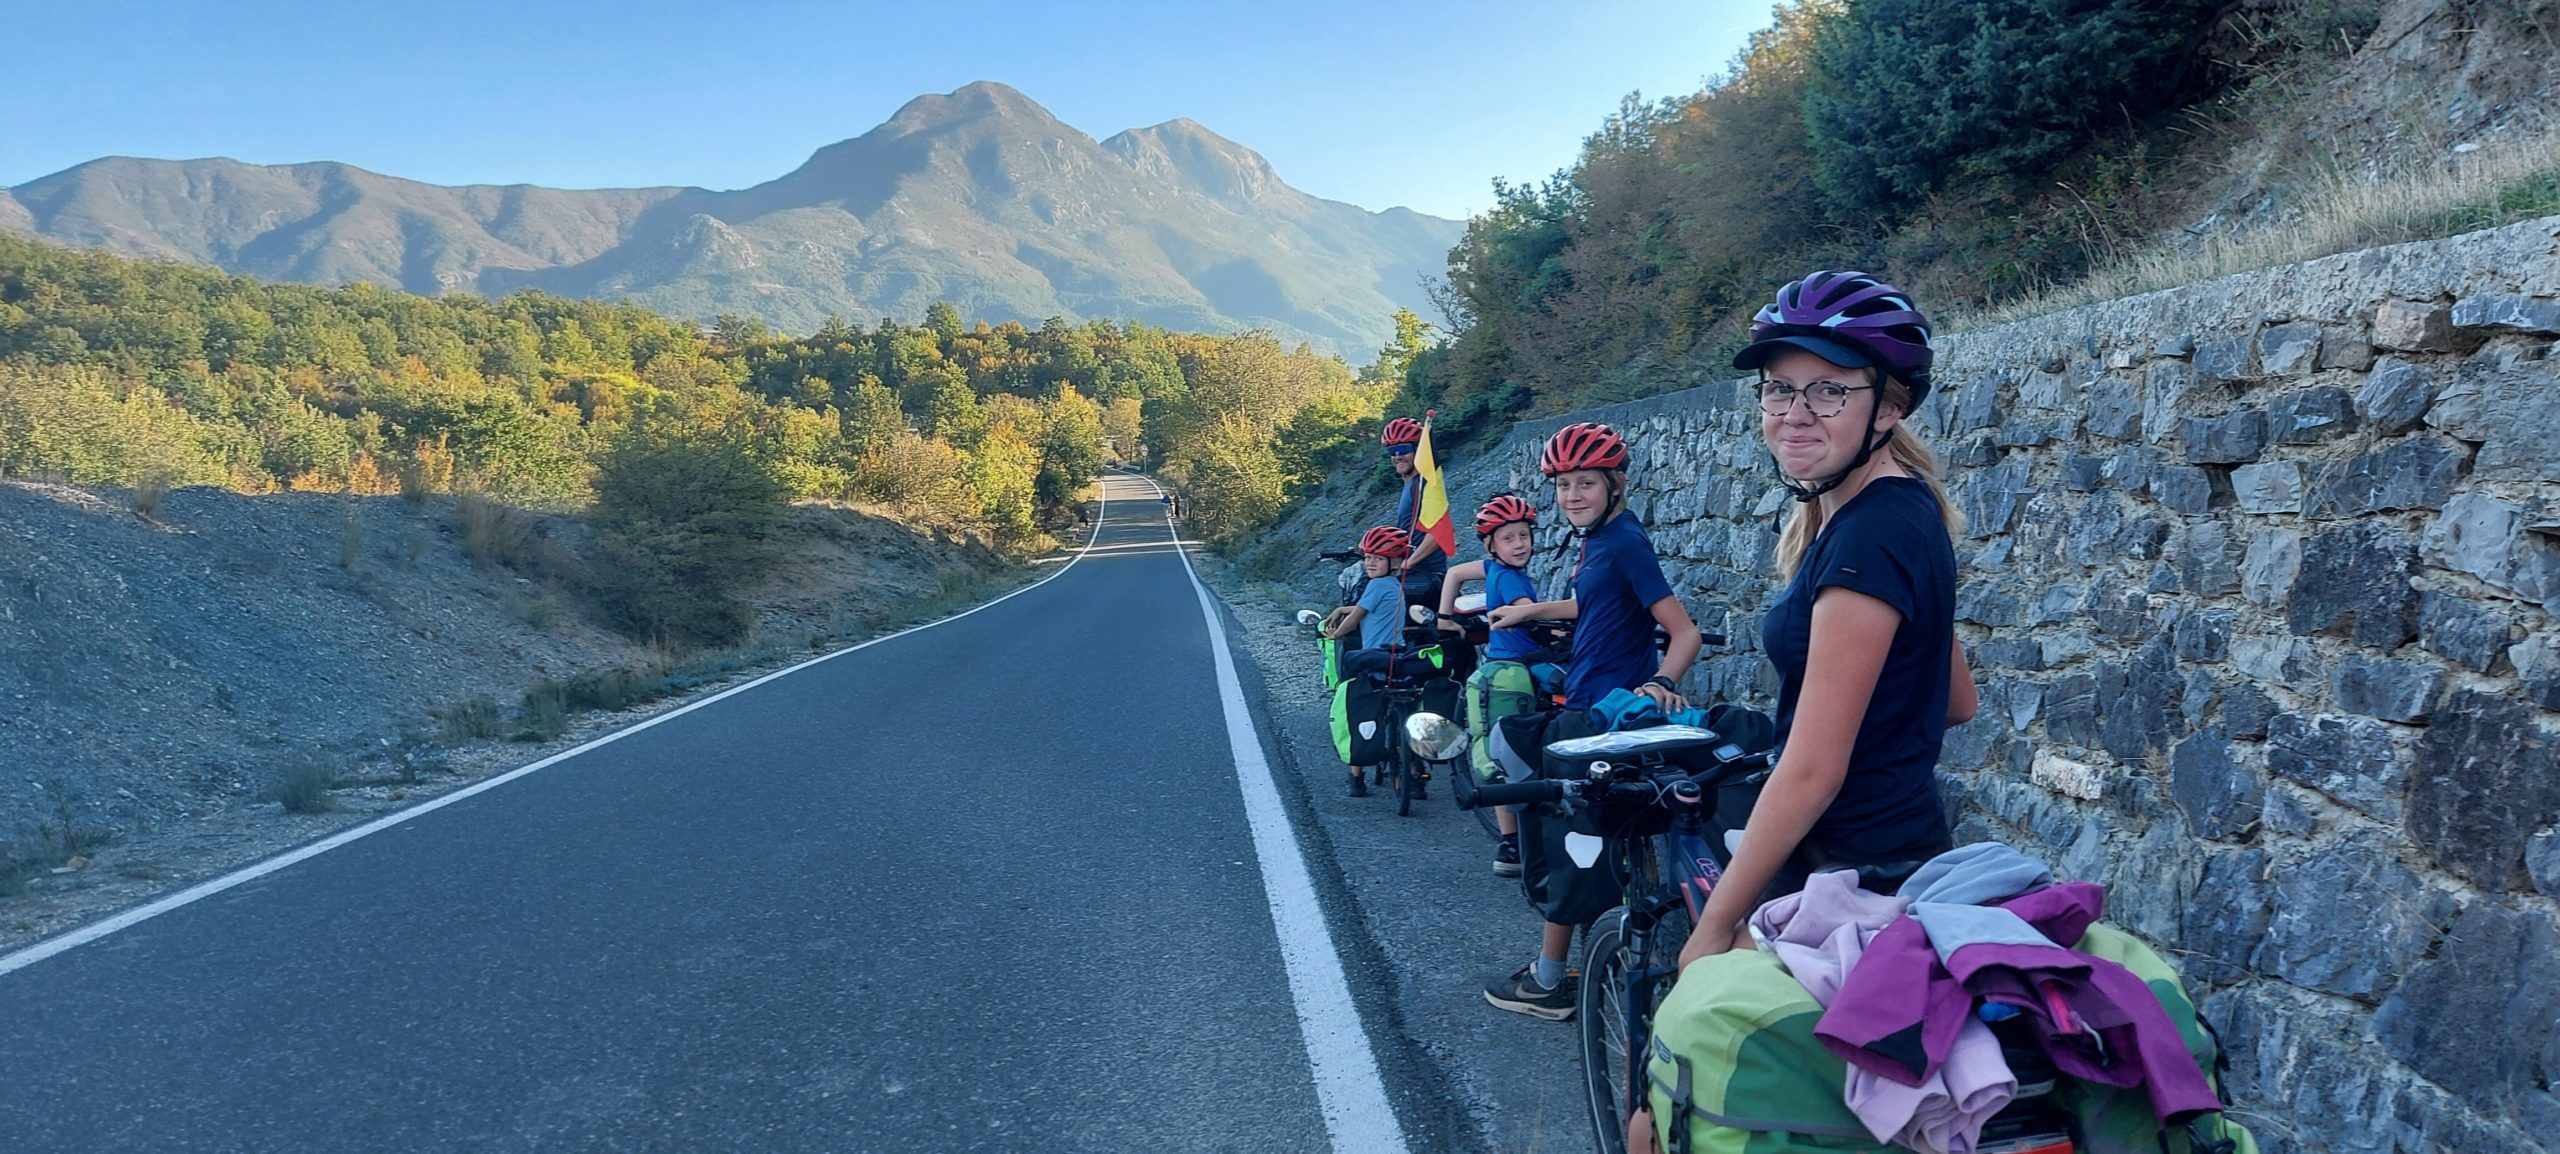 La famille Polomé est partie de Belgique a déjà parcouru plus de 5 000 km à vélo à la découverte du monde